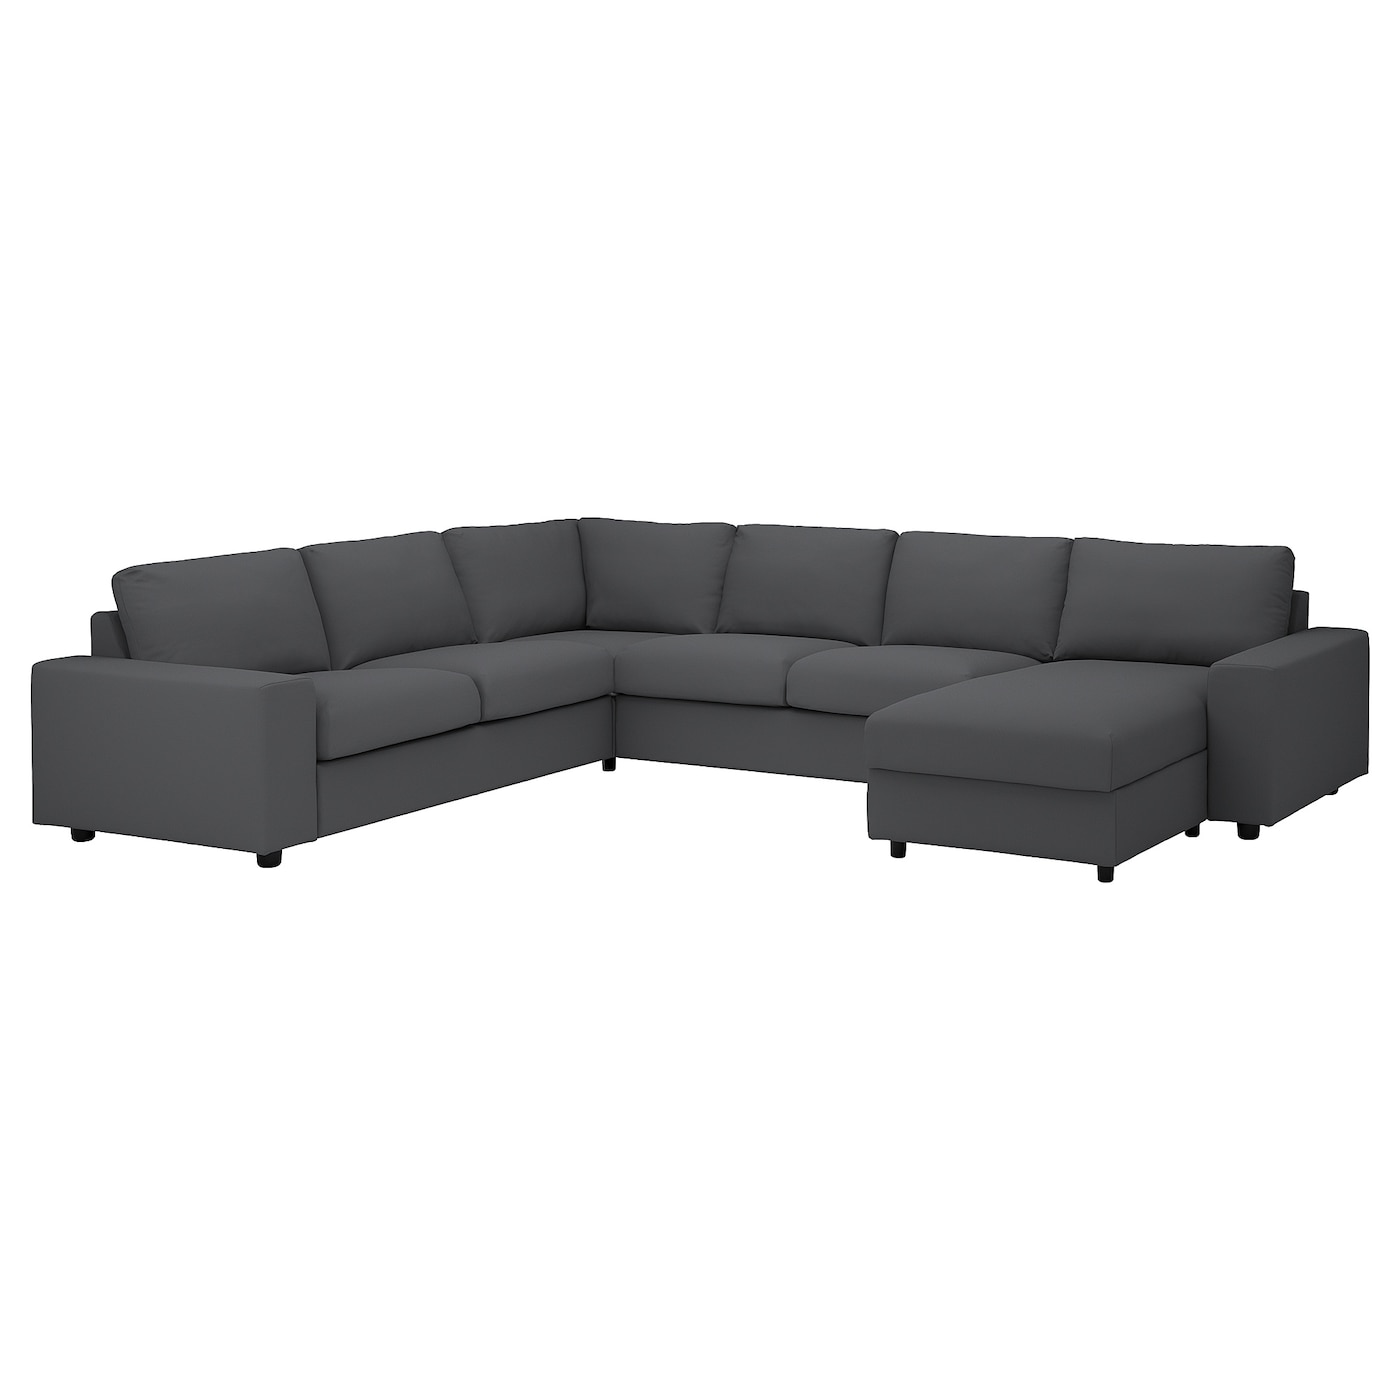 ВИМЛЕ Диван угловой, 5-местный. диван+диван, с широкими подлокотниками/Халларп серый VIMLE IKEA диван офисный угловой стандартный